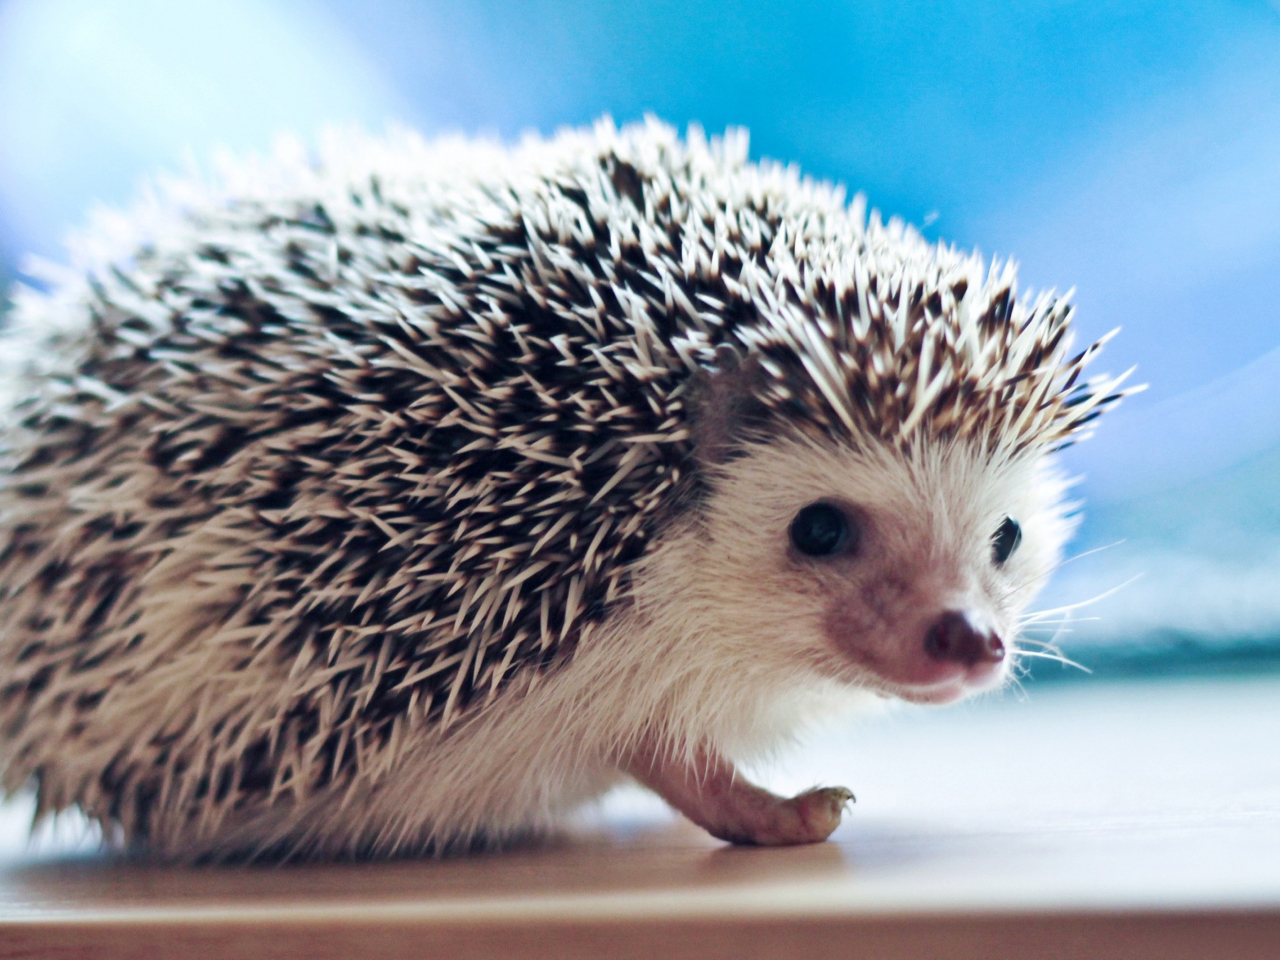 Cute Hedgehog wallpaper 1280x960